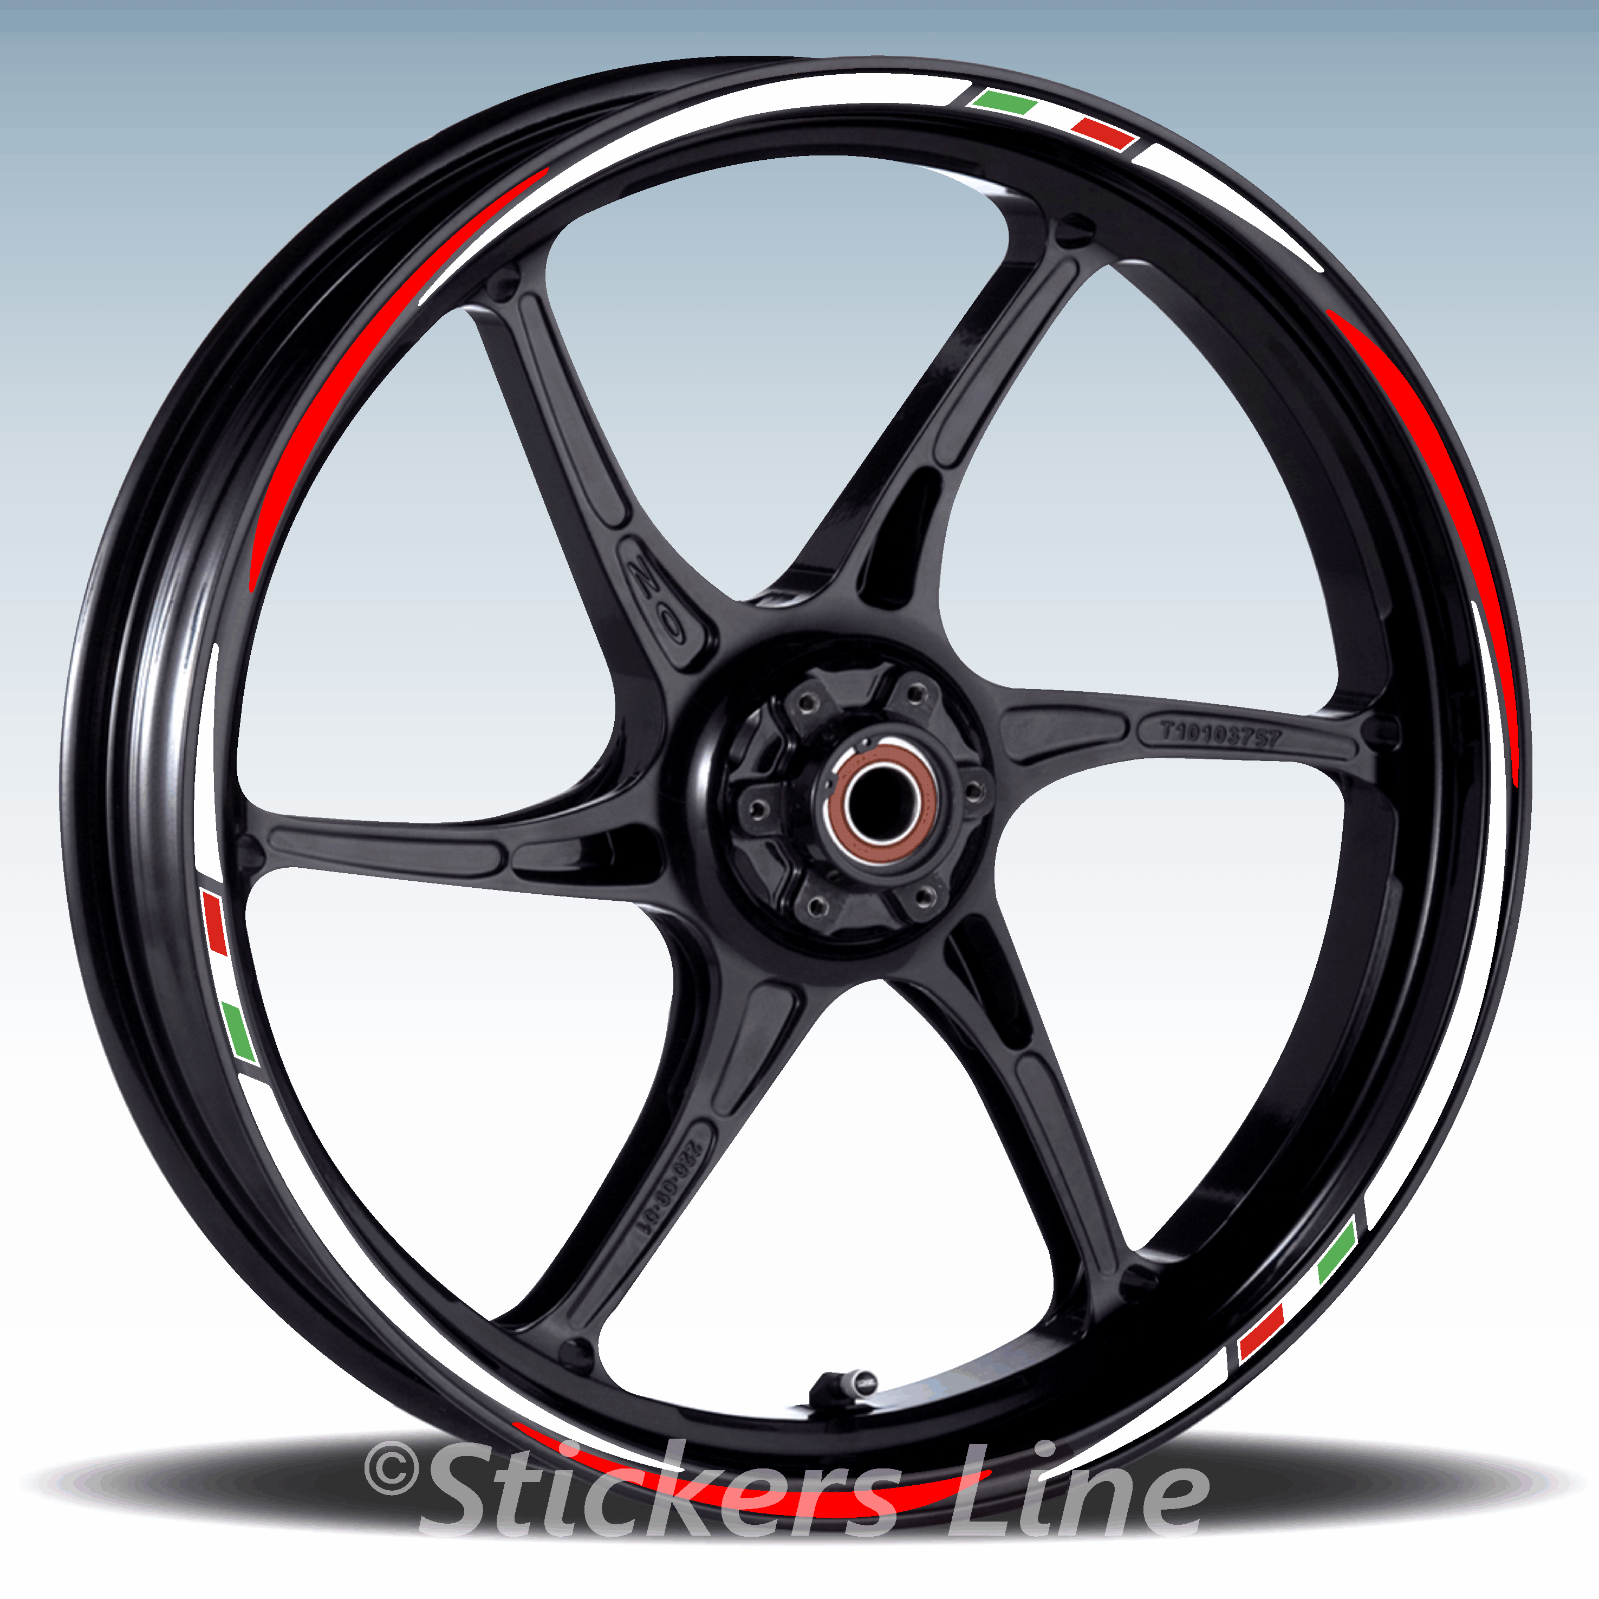 Adesivi ruote moto strisce cerchi HONDA CB500F CB500 F wheels stickers Rac4 